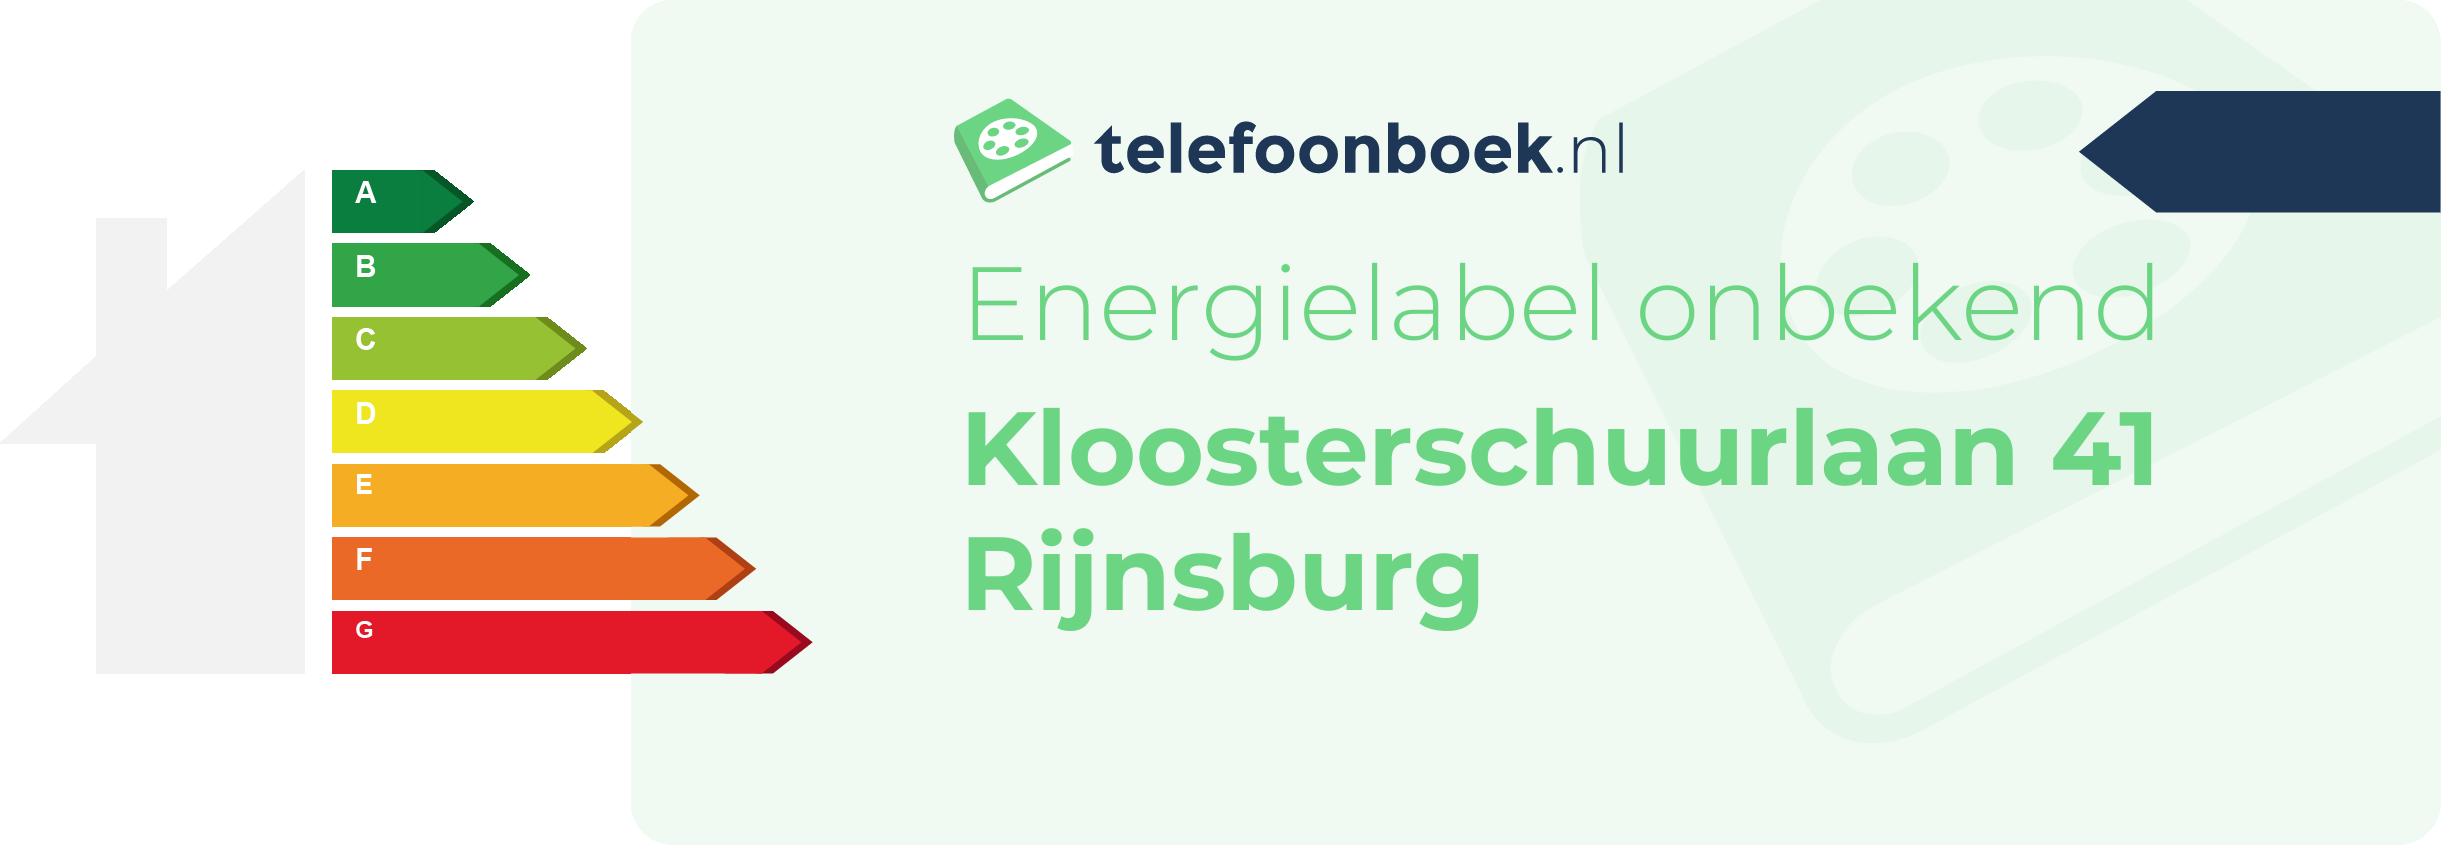 Energielabel Kloosterschuurlaan 41 Rijnsburg